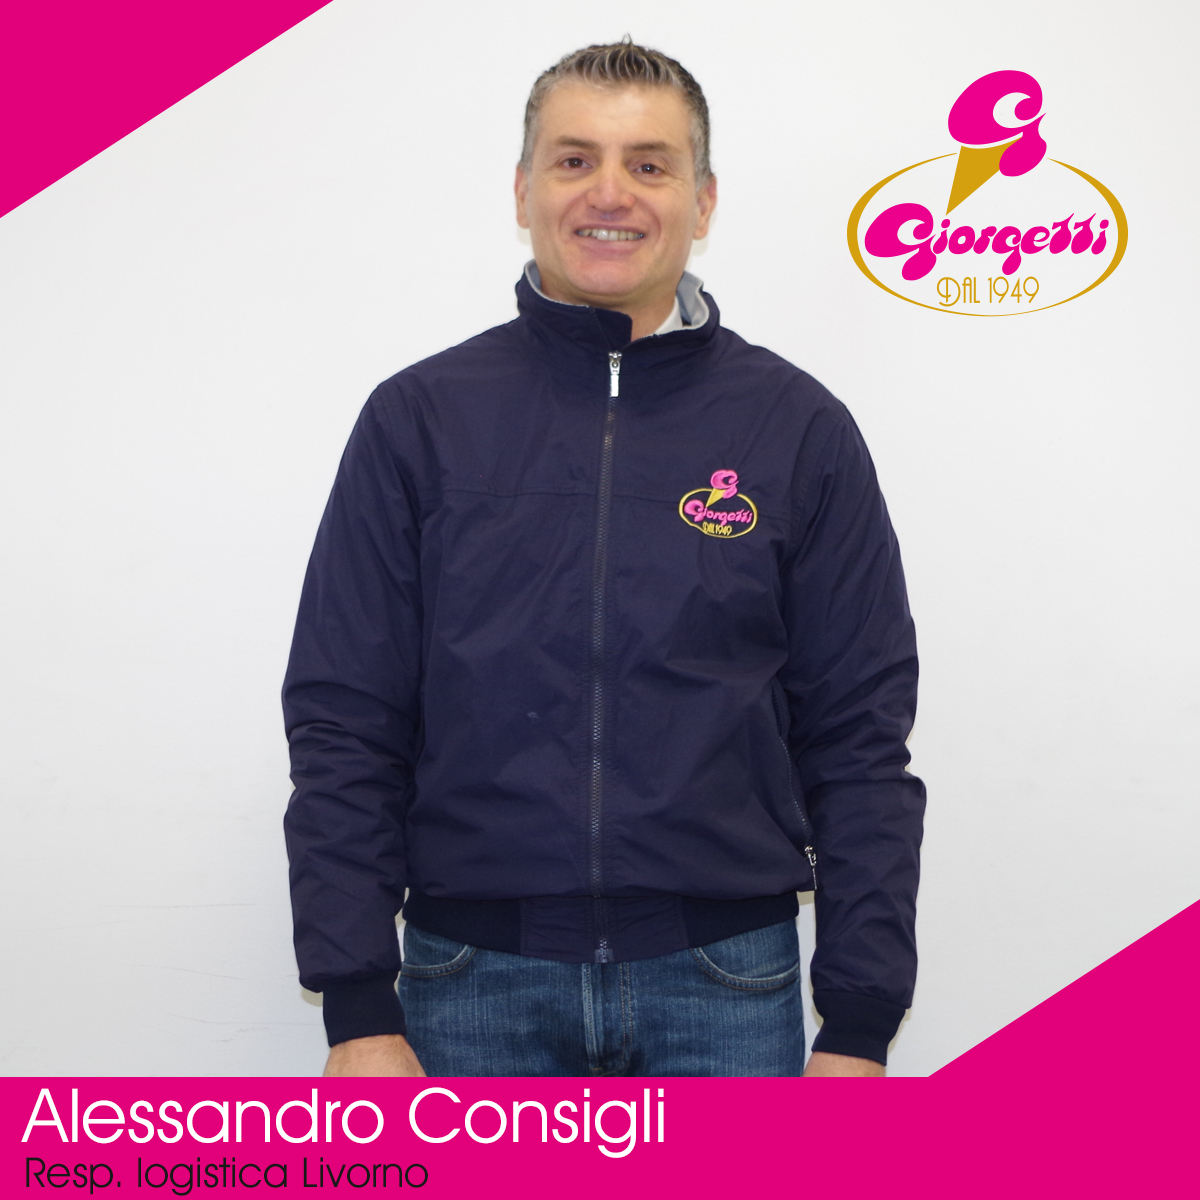 Alessandro Consigli